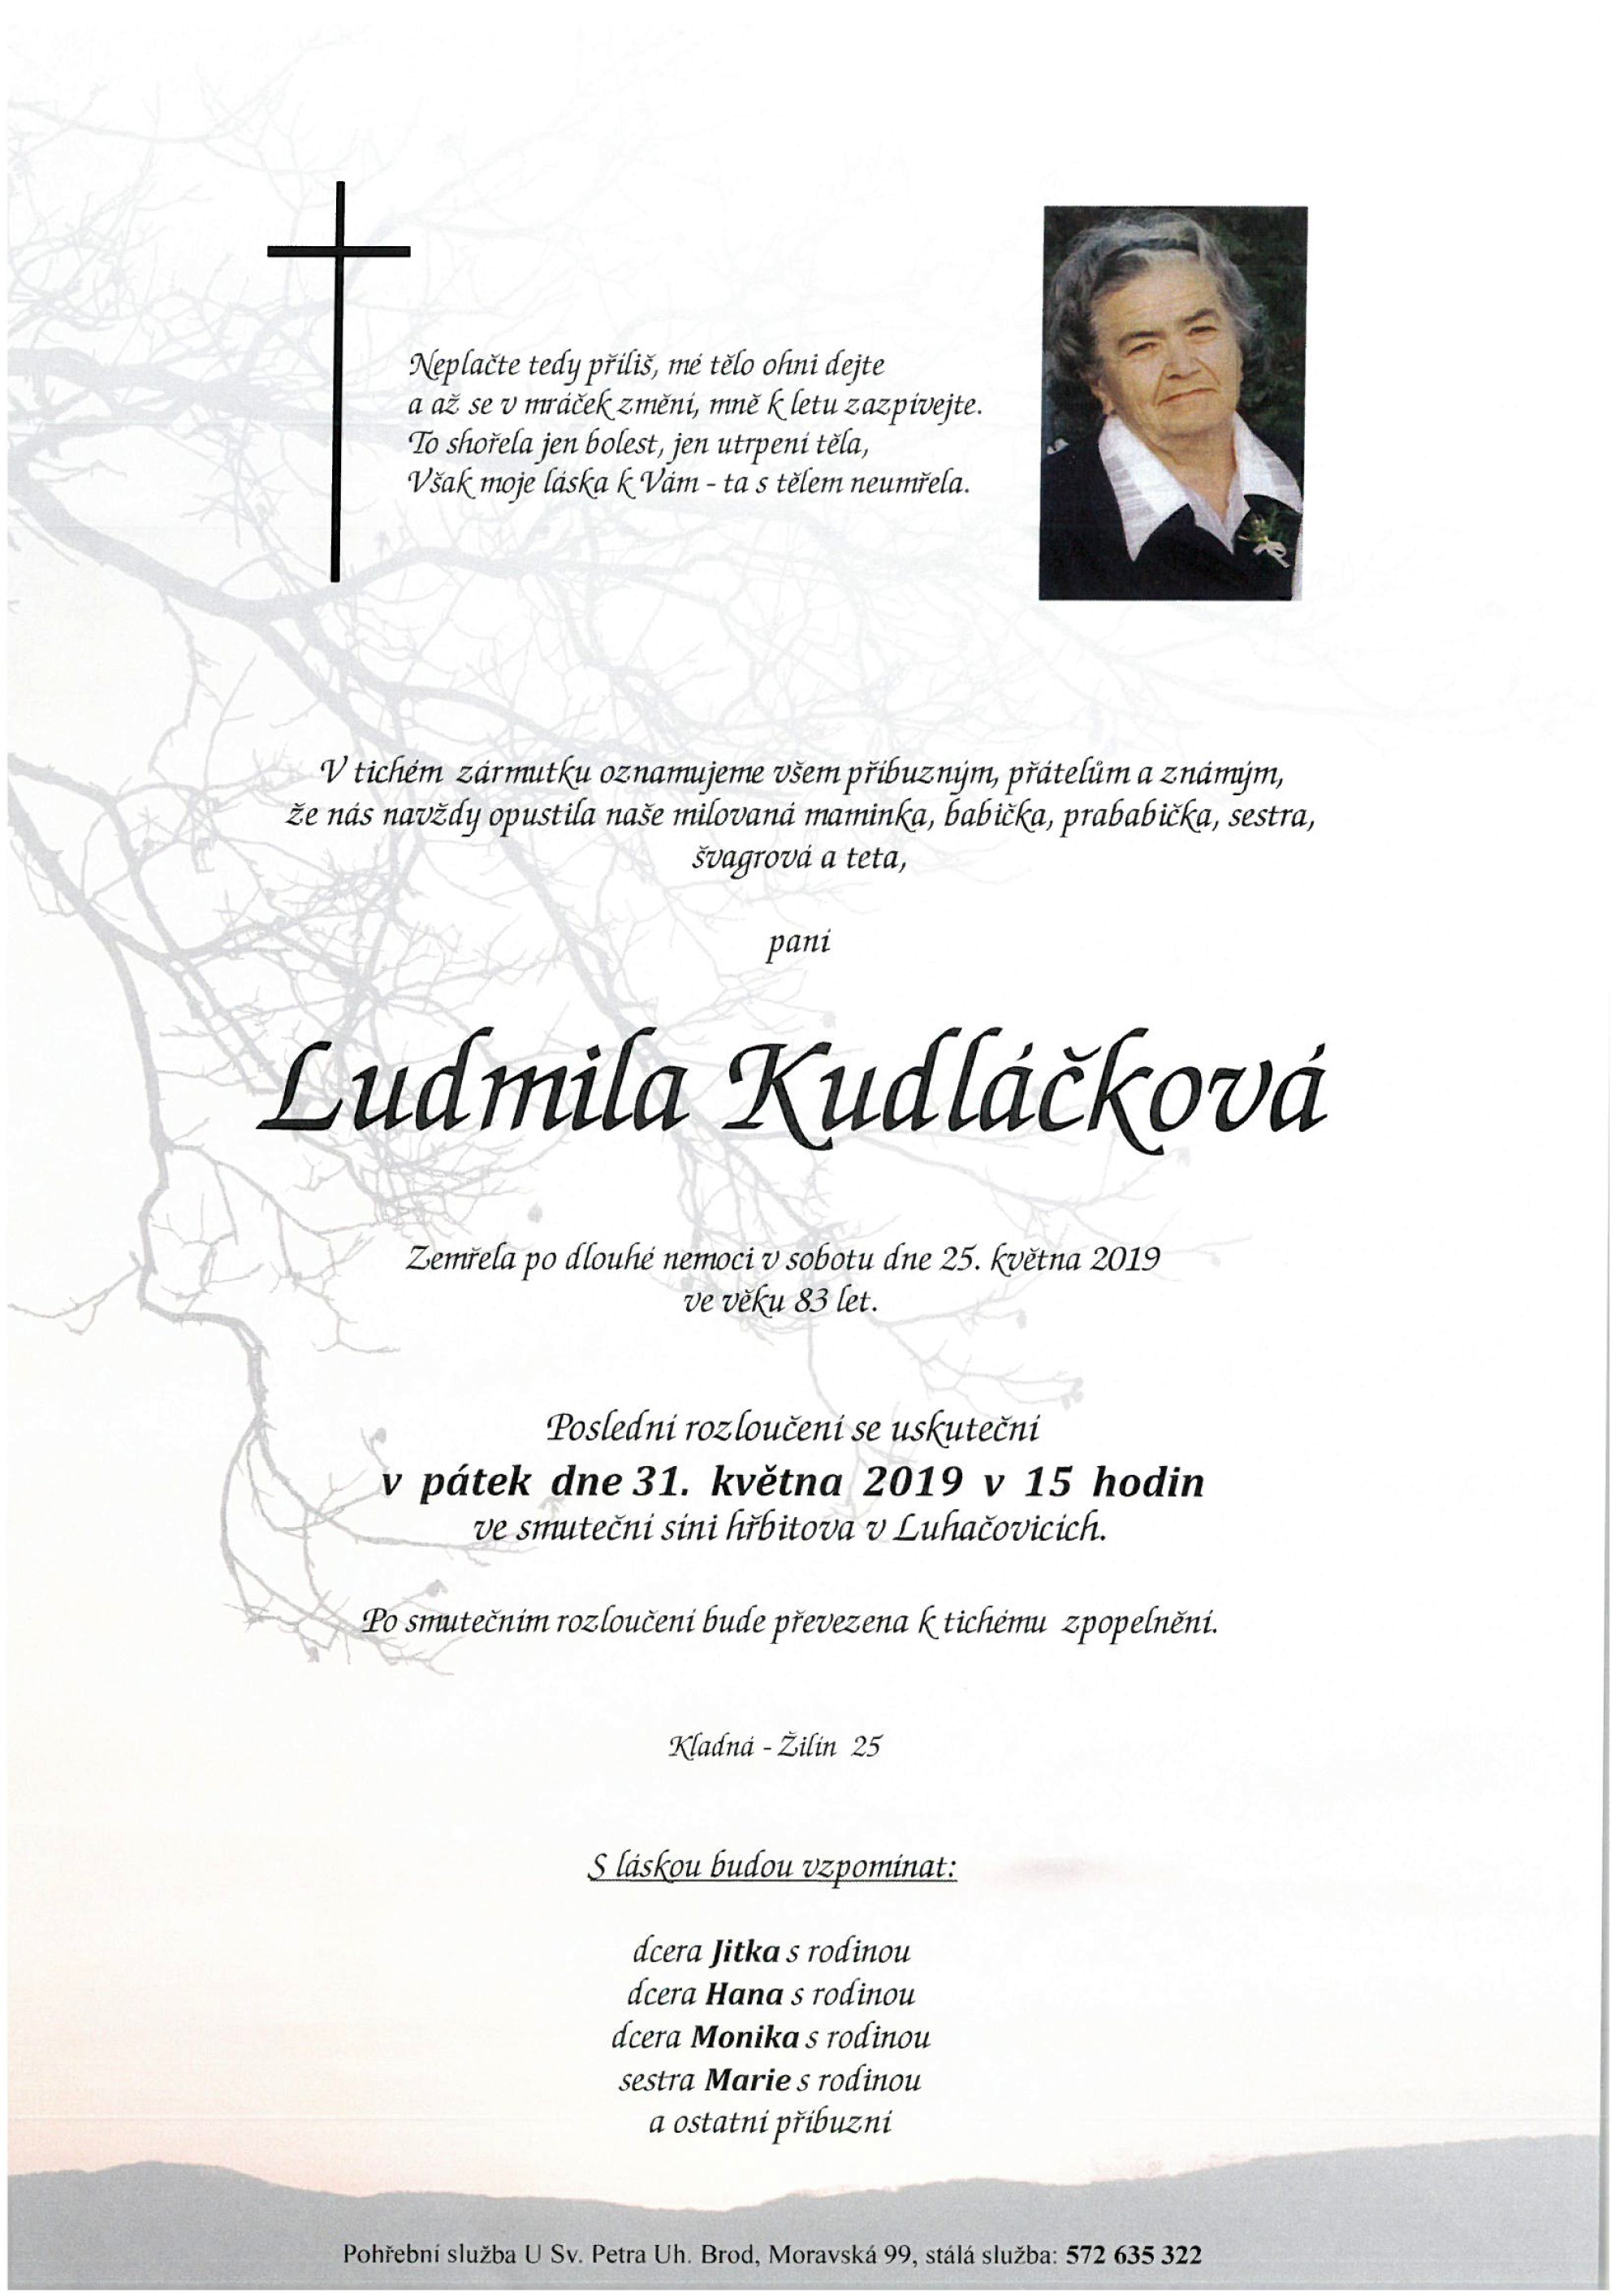 Ludmila Kudláčková